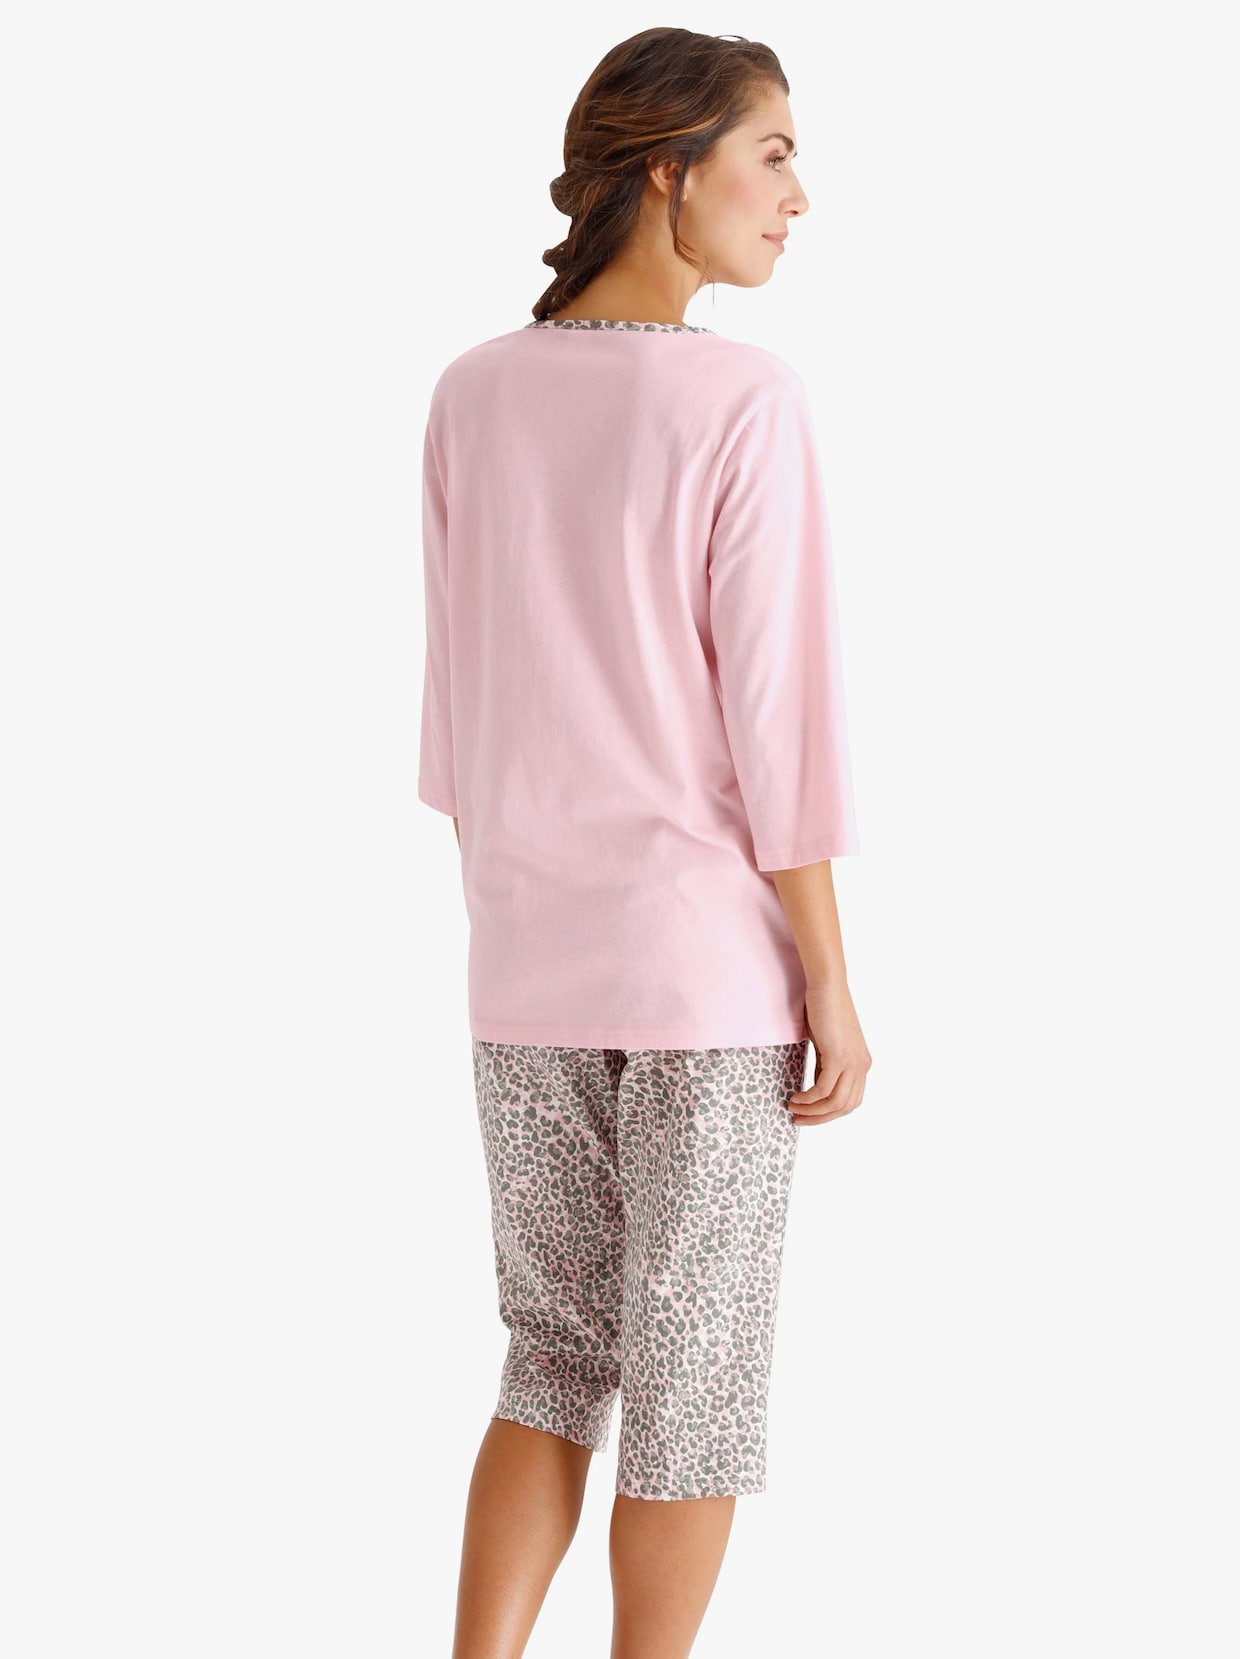 Capri pyžamo - růžová-šedá-potisk